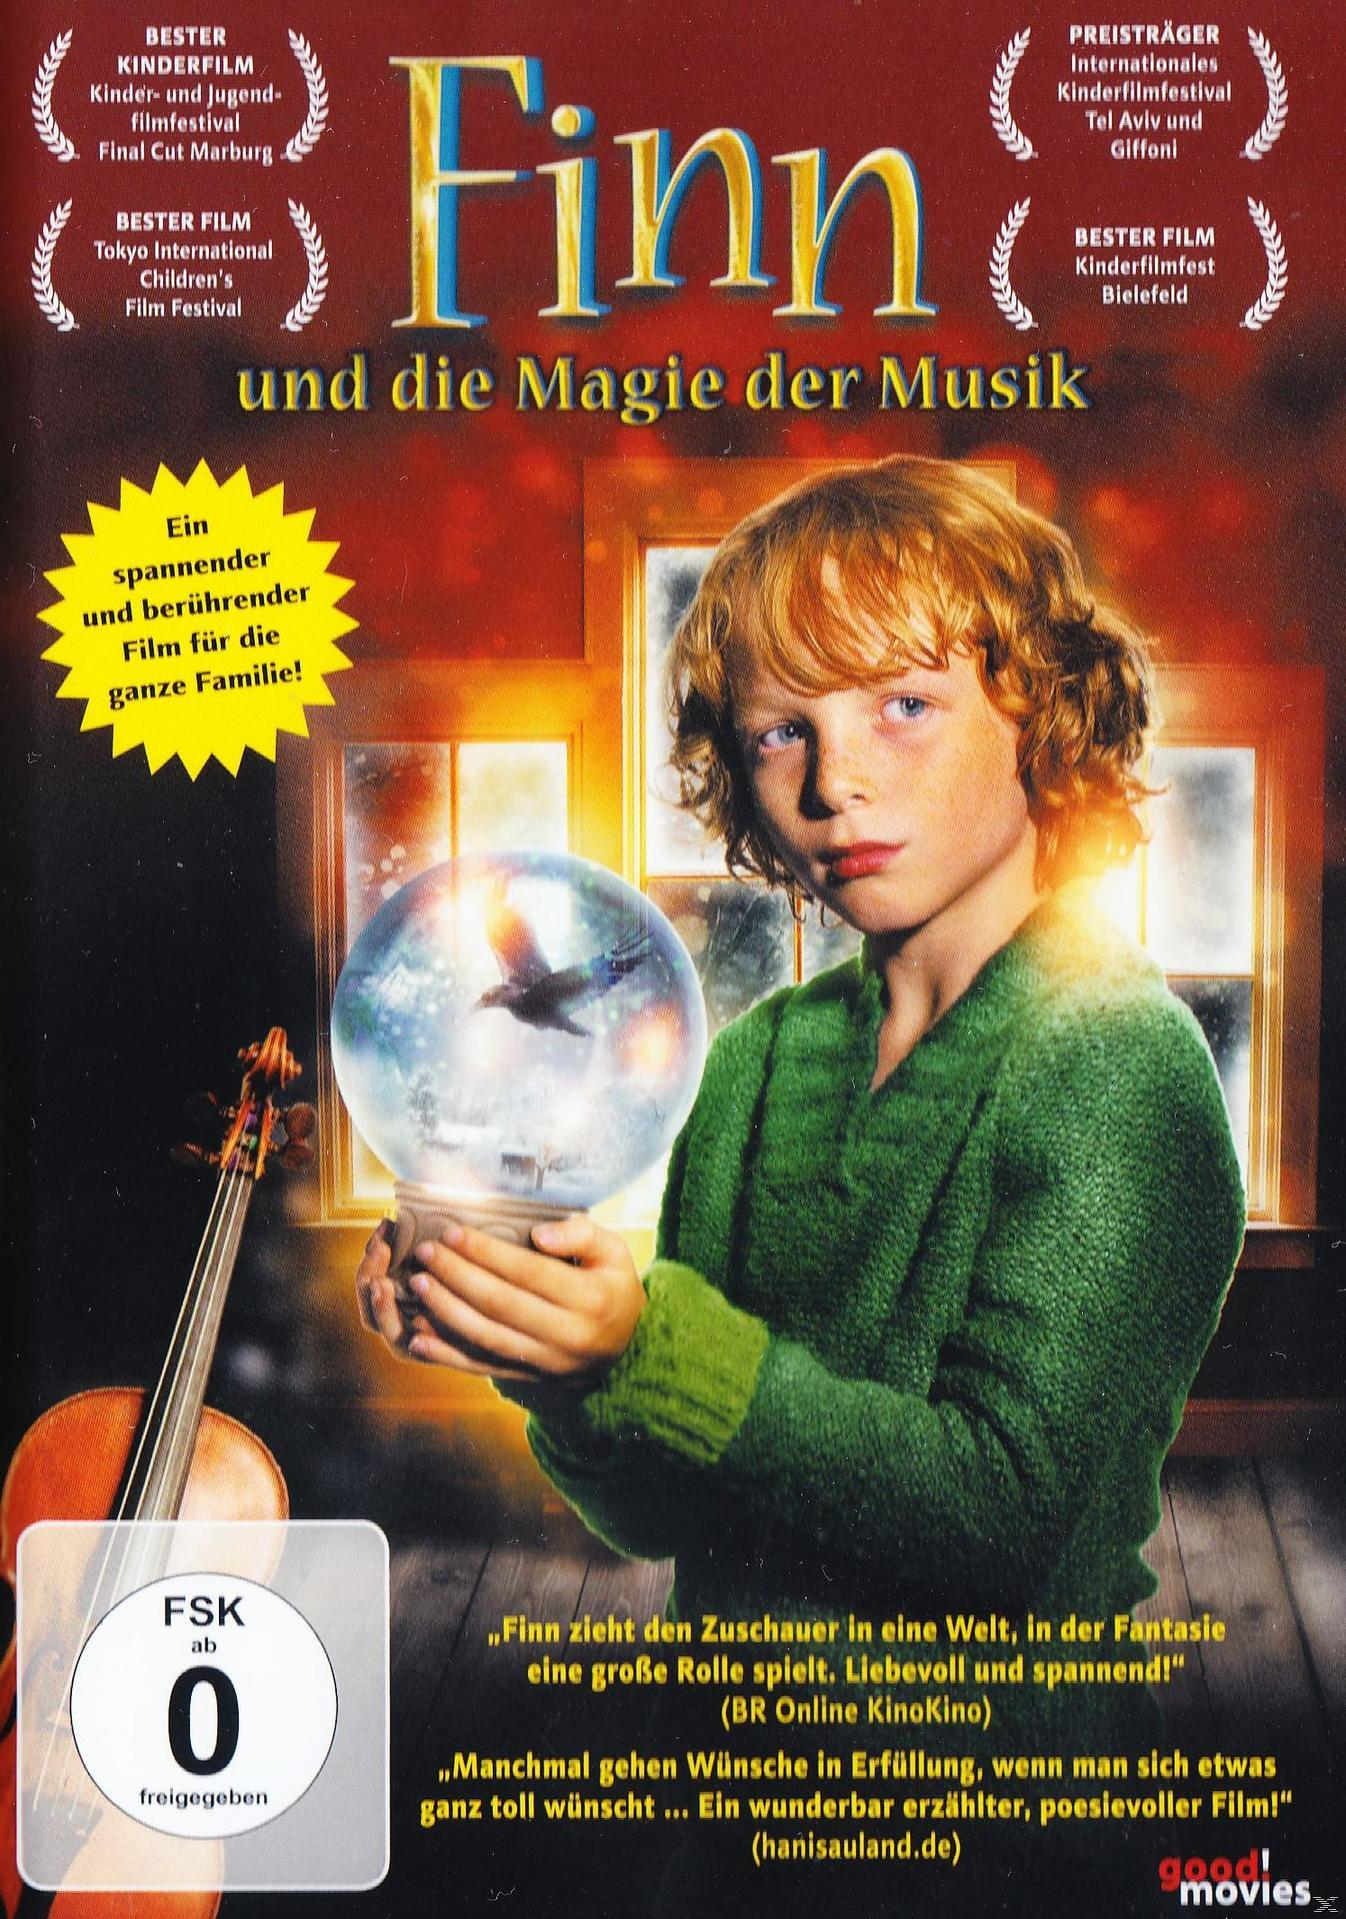 Magie Finn und DVD der die Musik